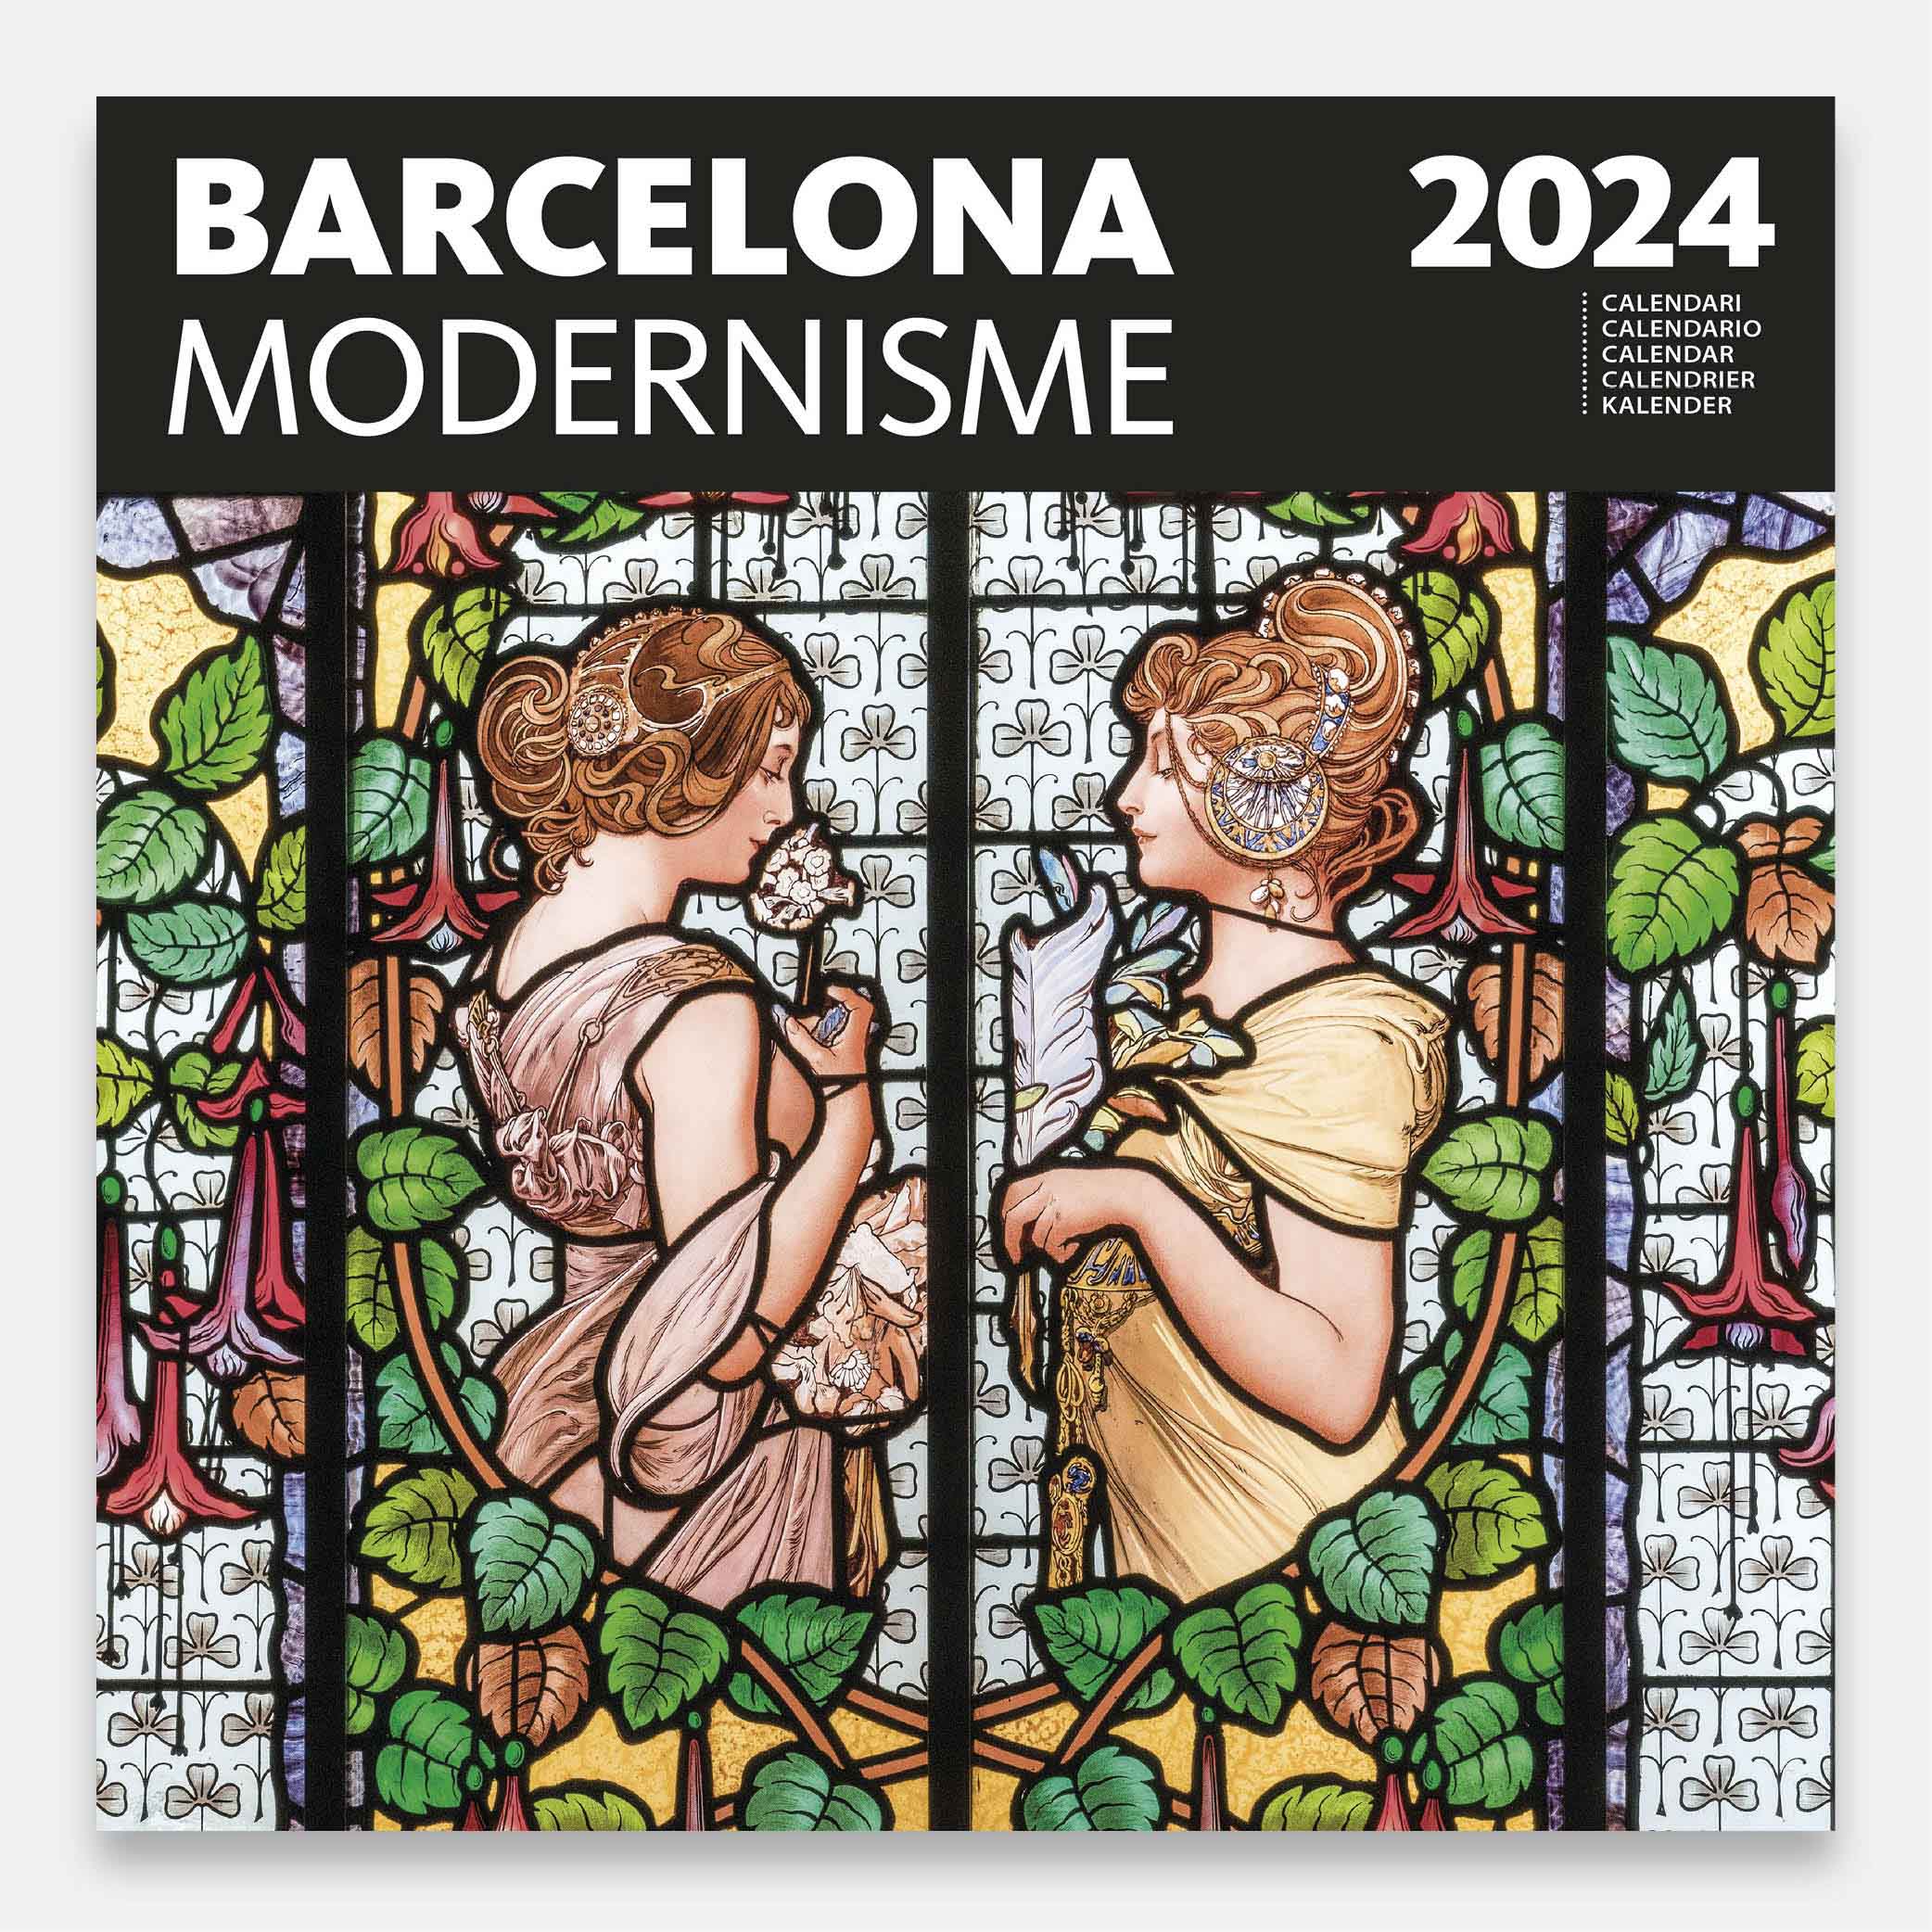 Calendario 2024 Modernisme 24modg calendario pared 2024 barcelona modernismo modernisme